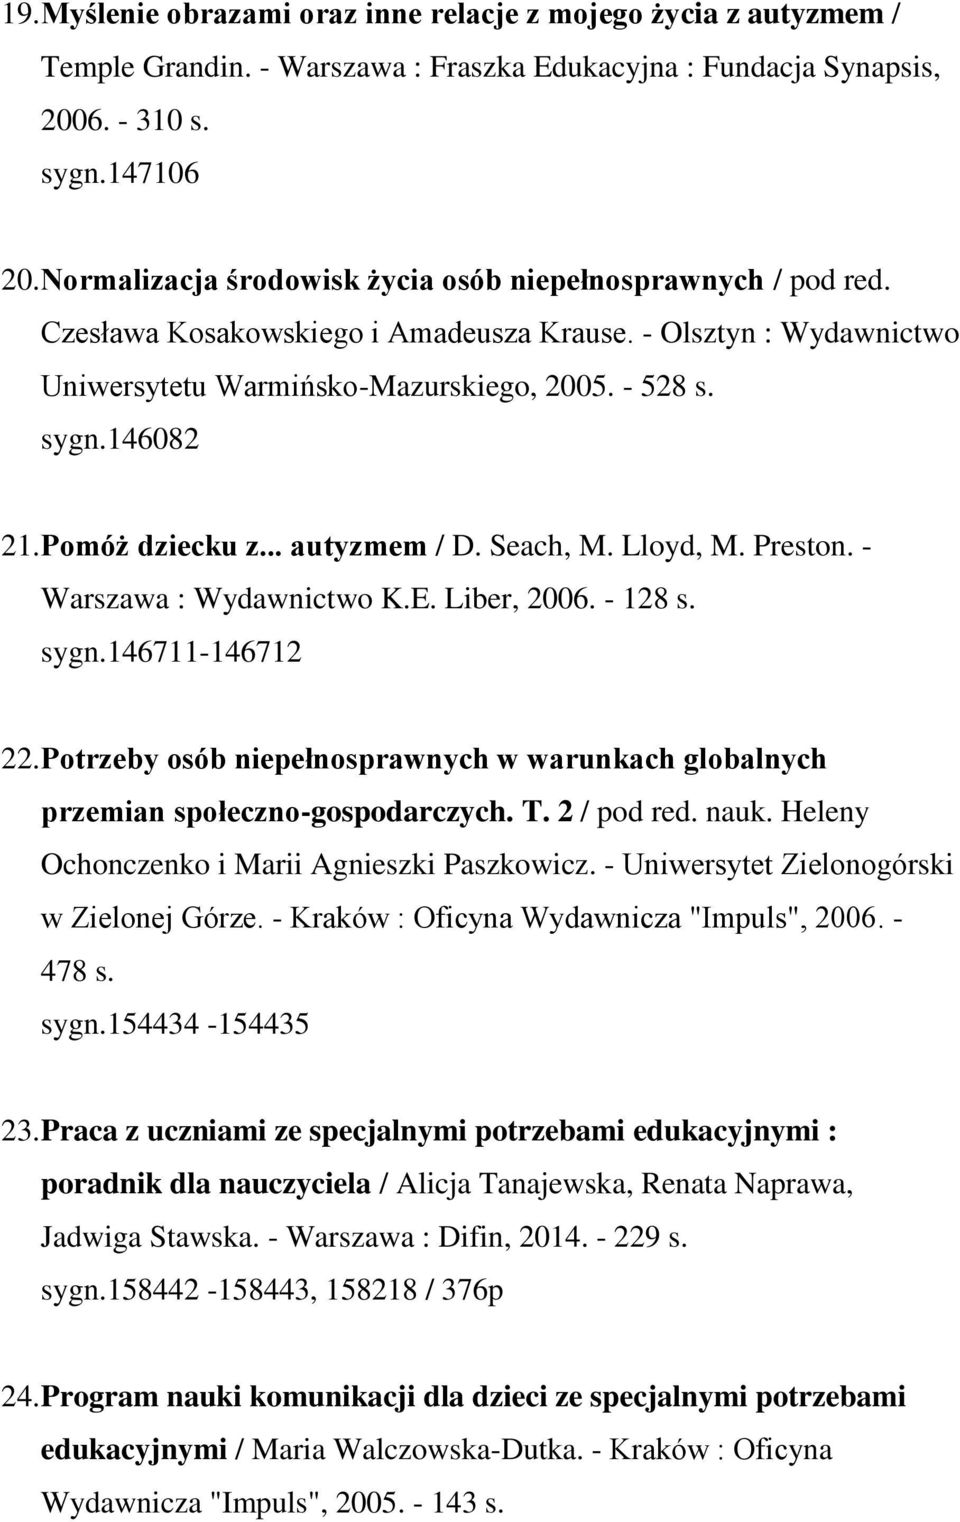 Pomóż dziecku z... autyzmem / D. Seach, M. Lloyd, M. Preston. - Warszawa : Wydawnictwo K.E. Liber, 2006. - 128 s. sygn.146711-146712 22.